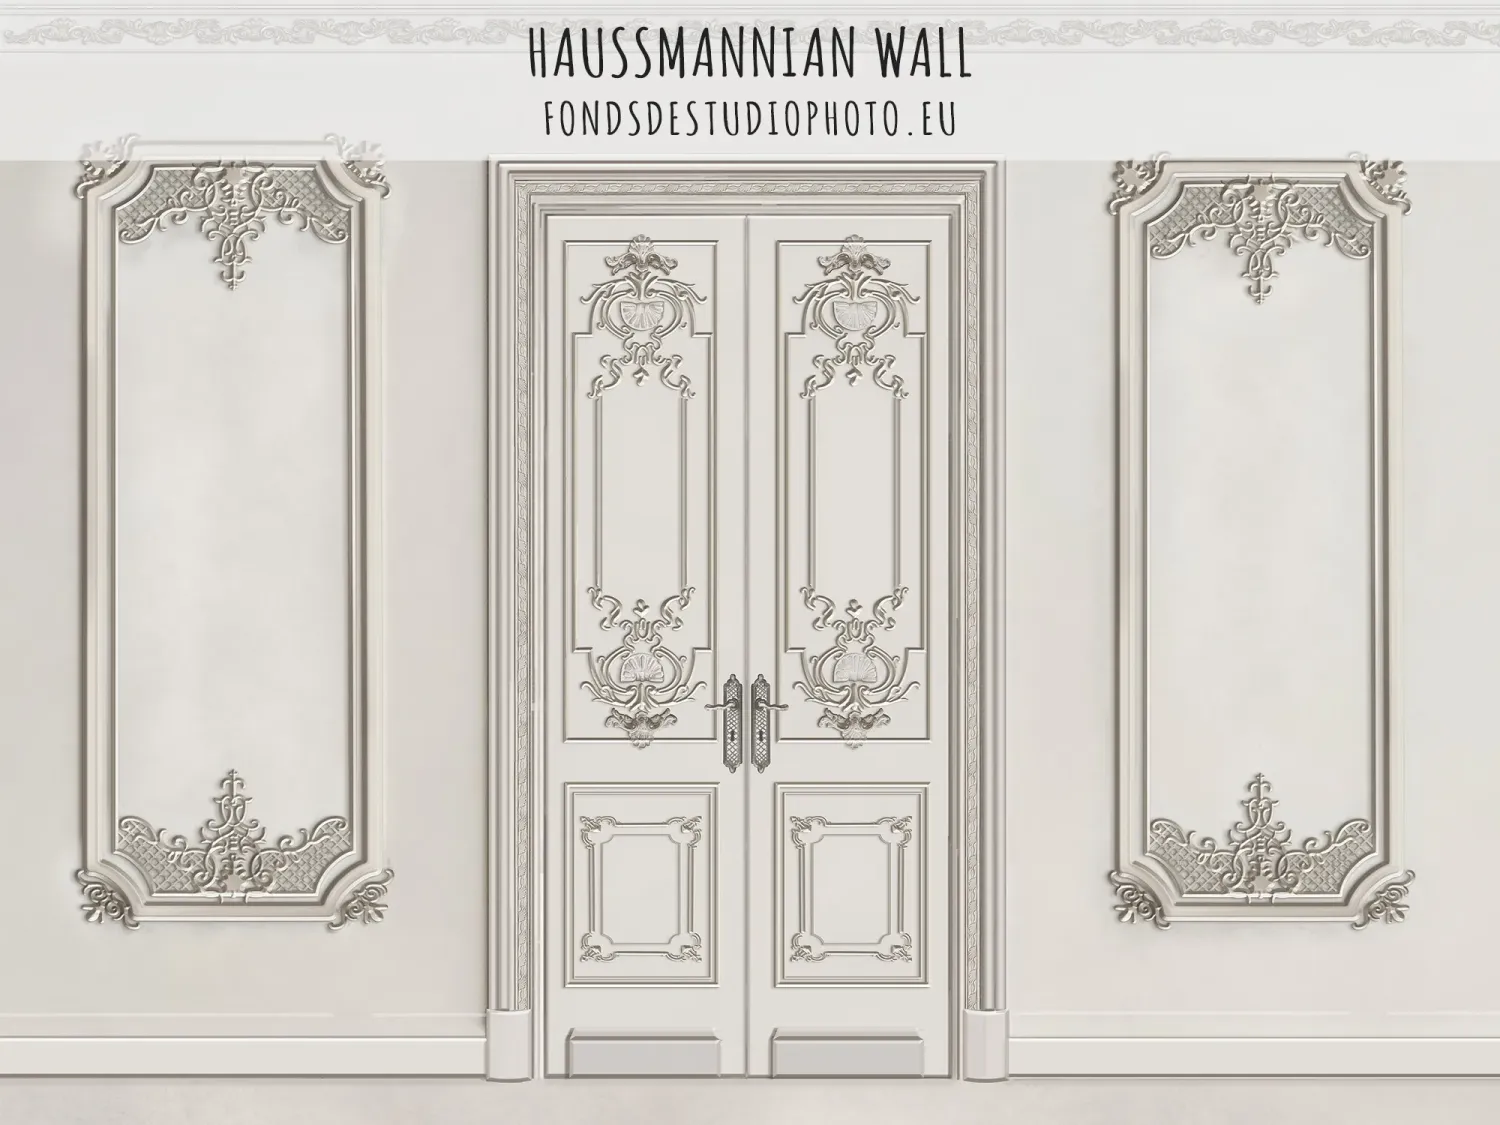 Haussmannian Wall